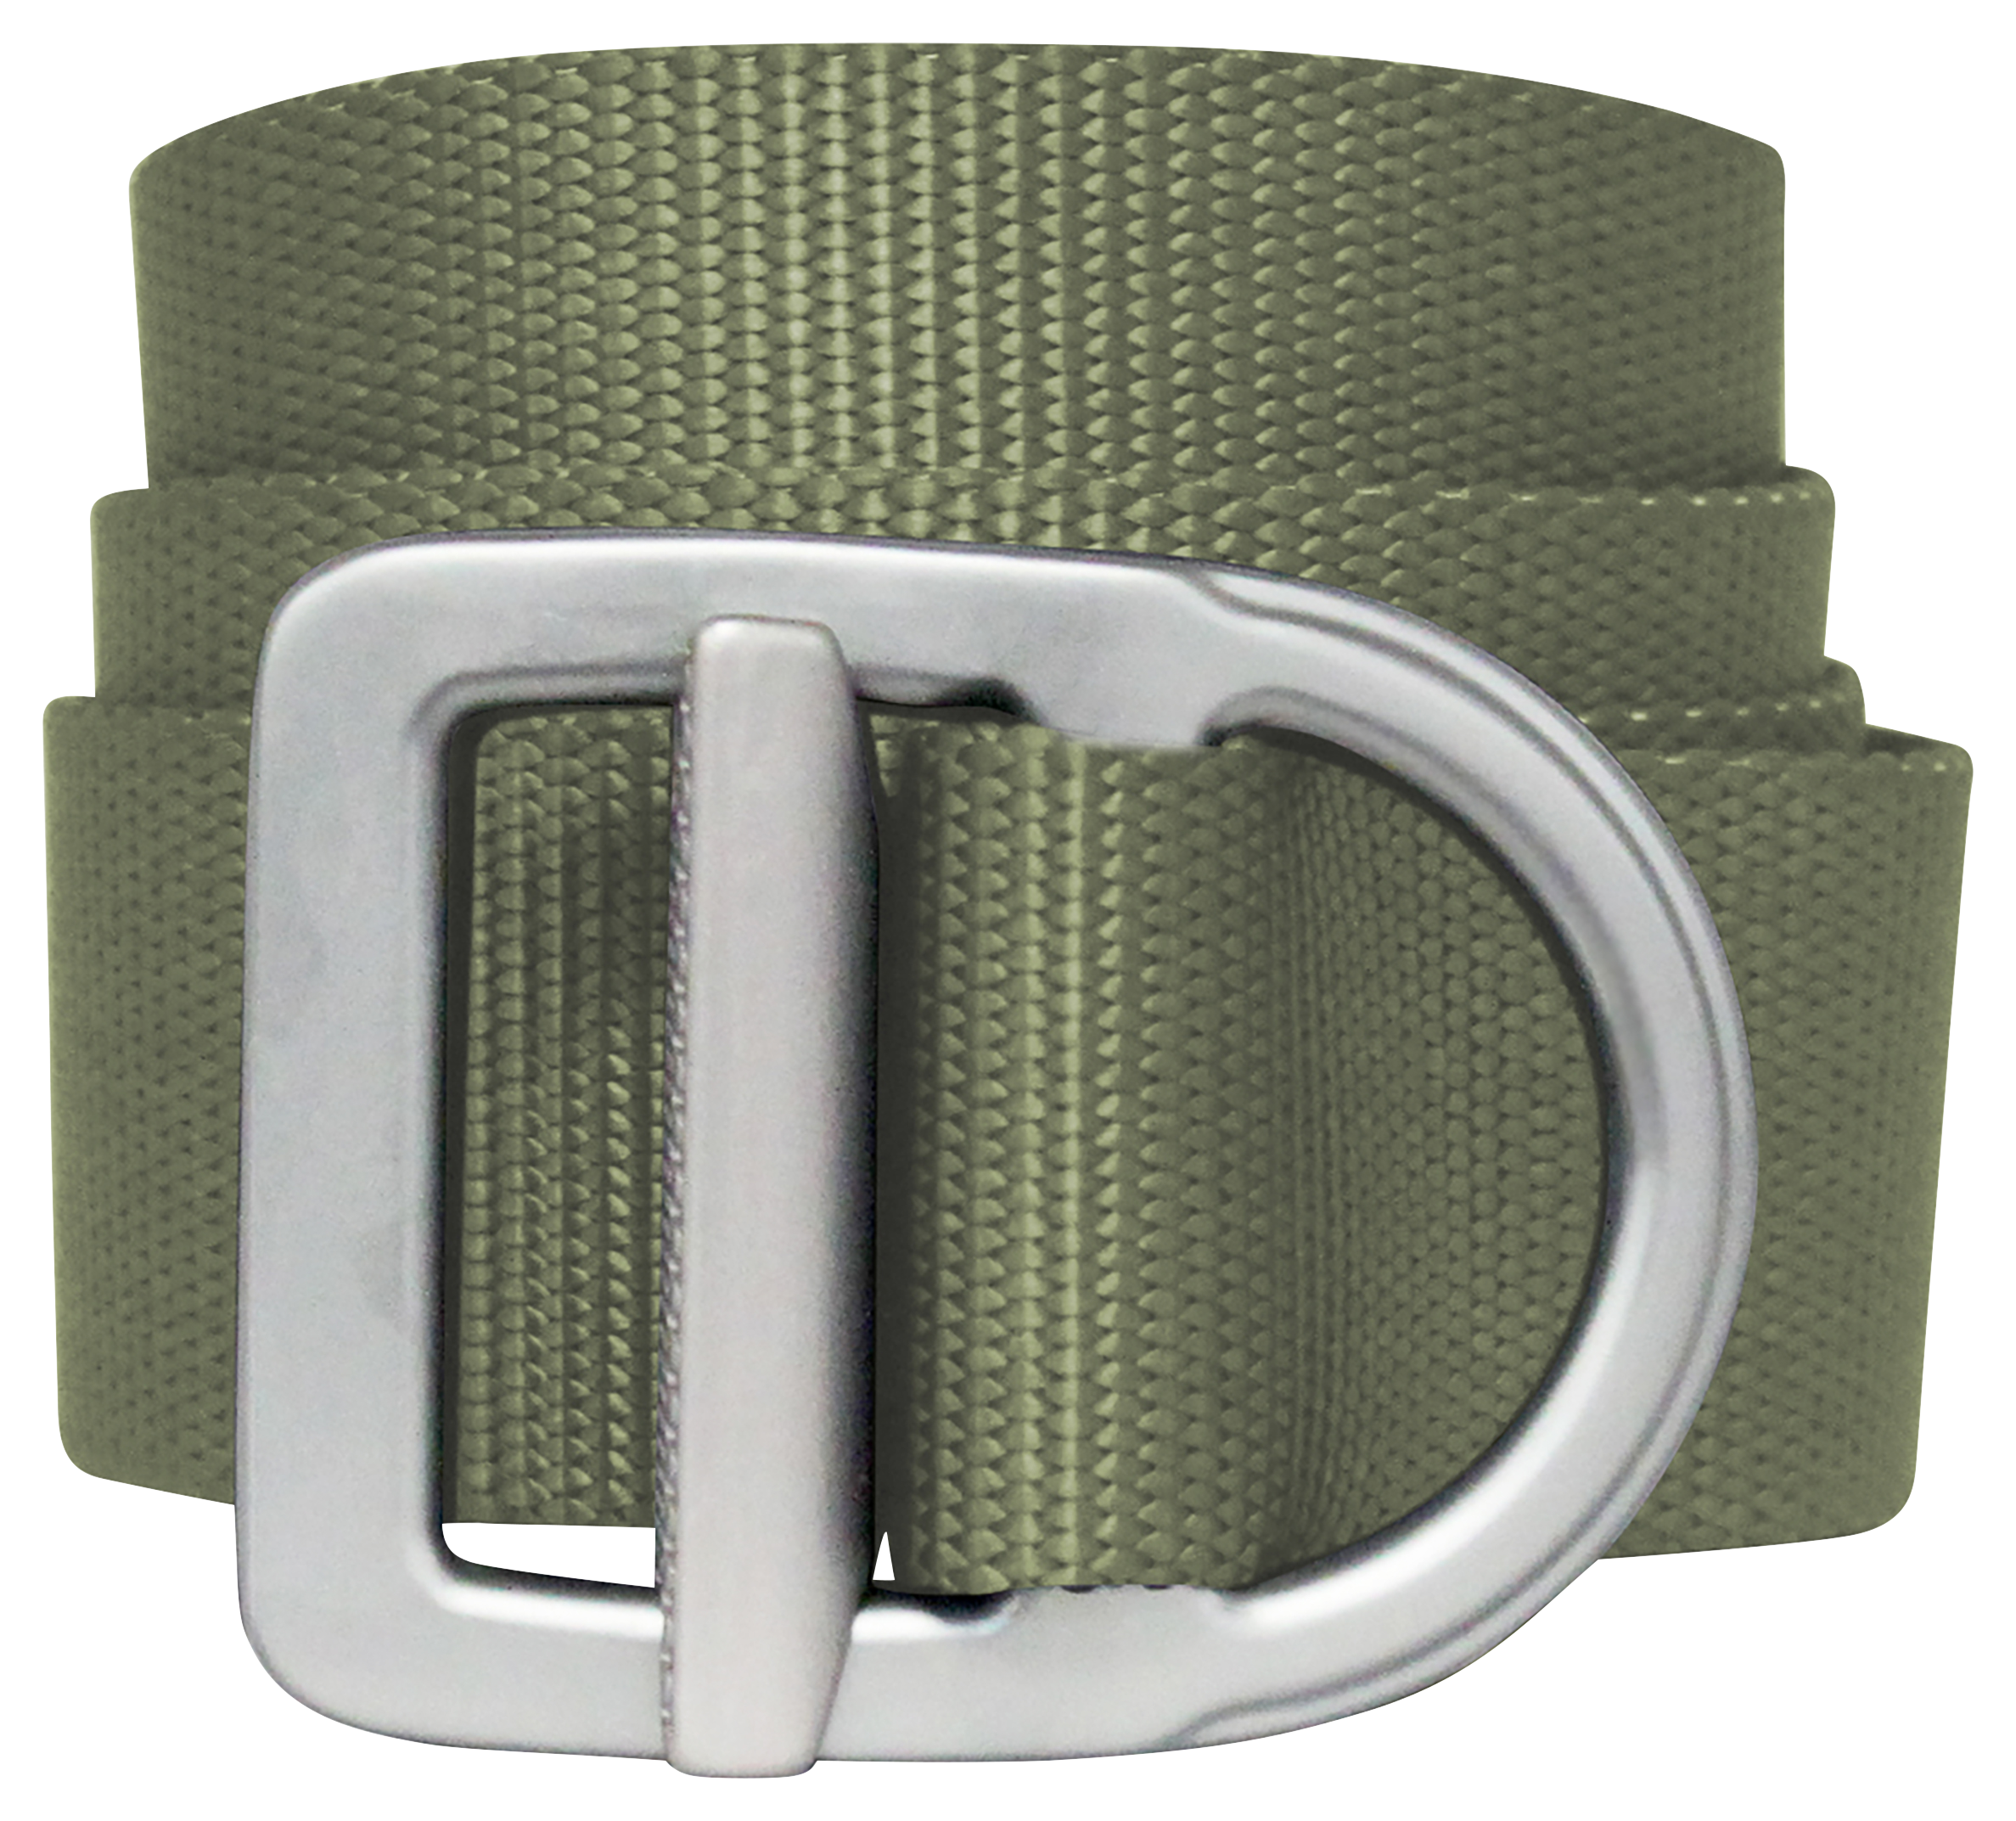 Bison Designs Last Chance Delta Light-Duty Belt for Men - Olive/Silver - XL